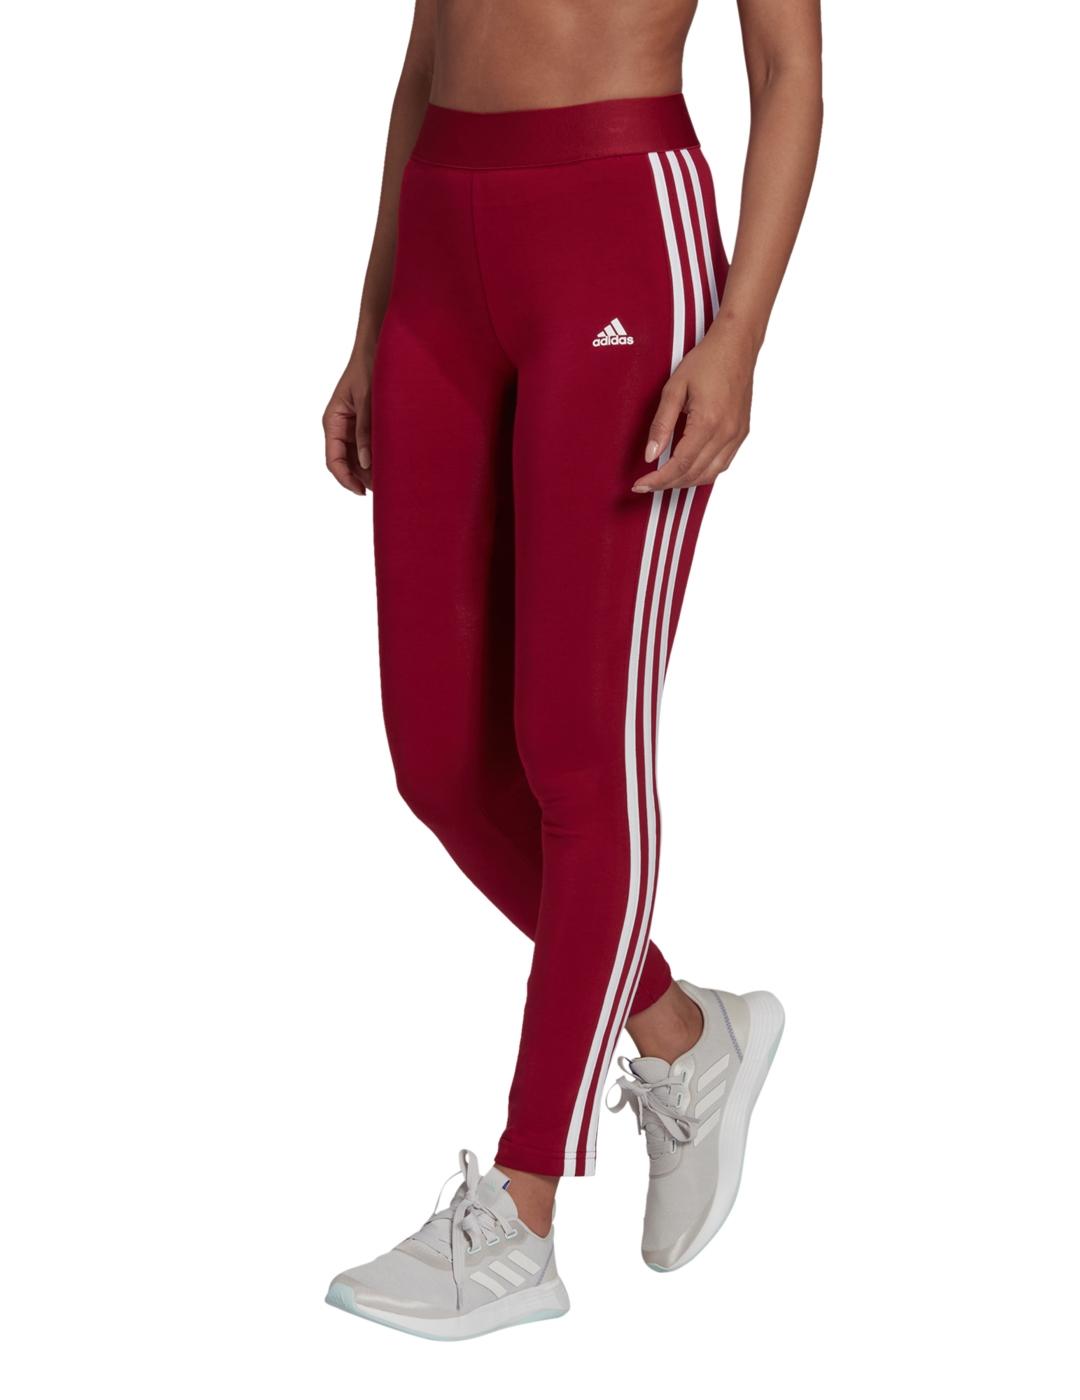 Adidas pantalones deportivos de mujer: a la venta a 44.99€ en